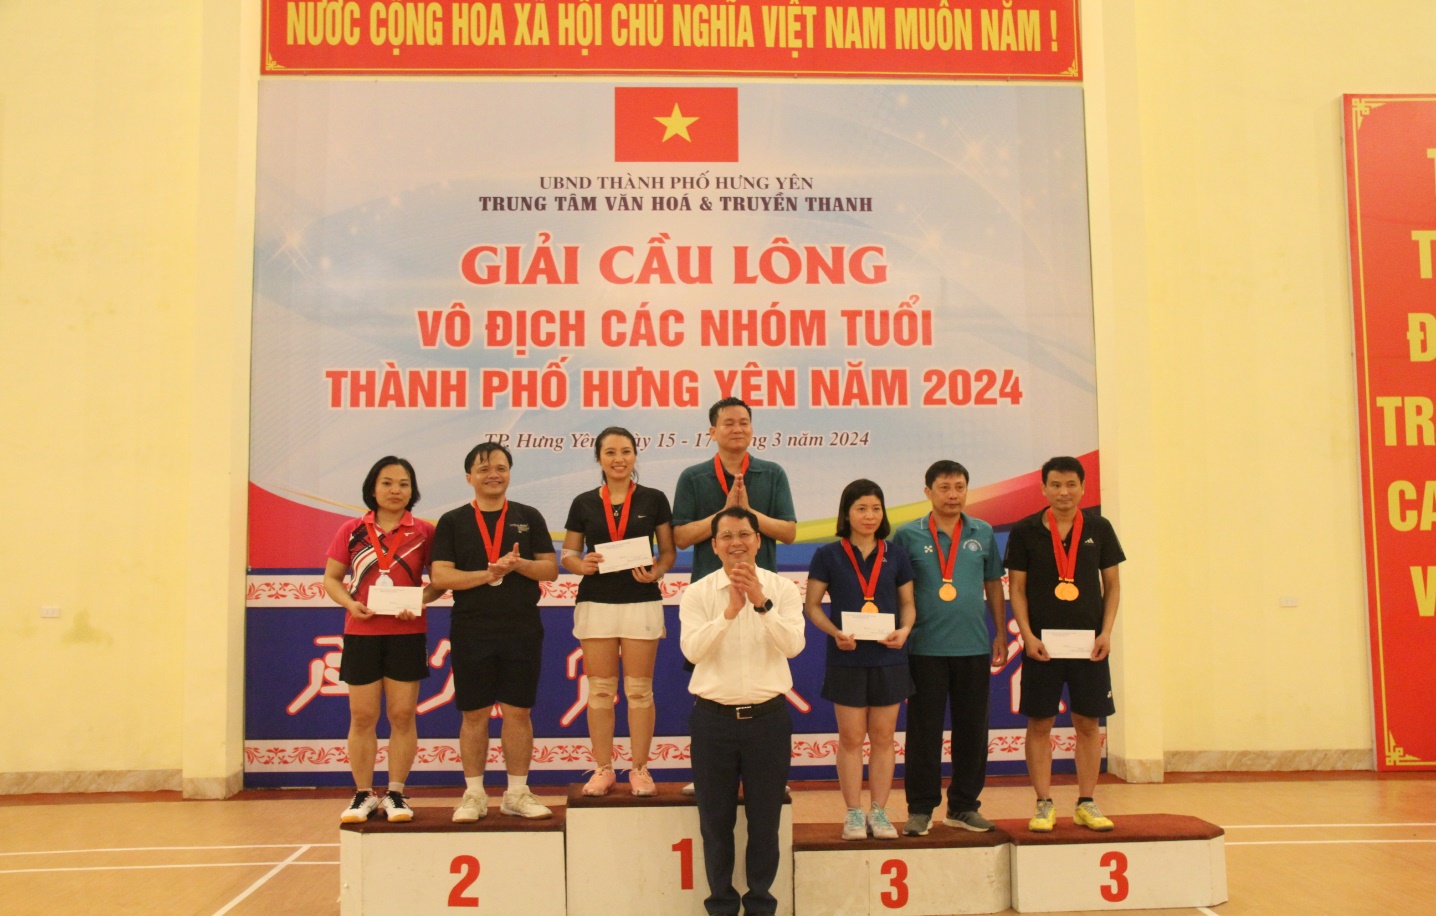 Giải Cầu lông vô địch các nhóm tuổi thành phố Hưng Yên năm 2024